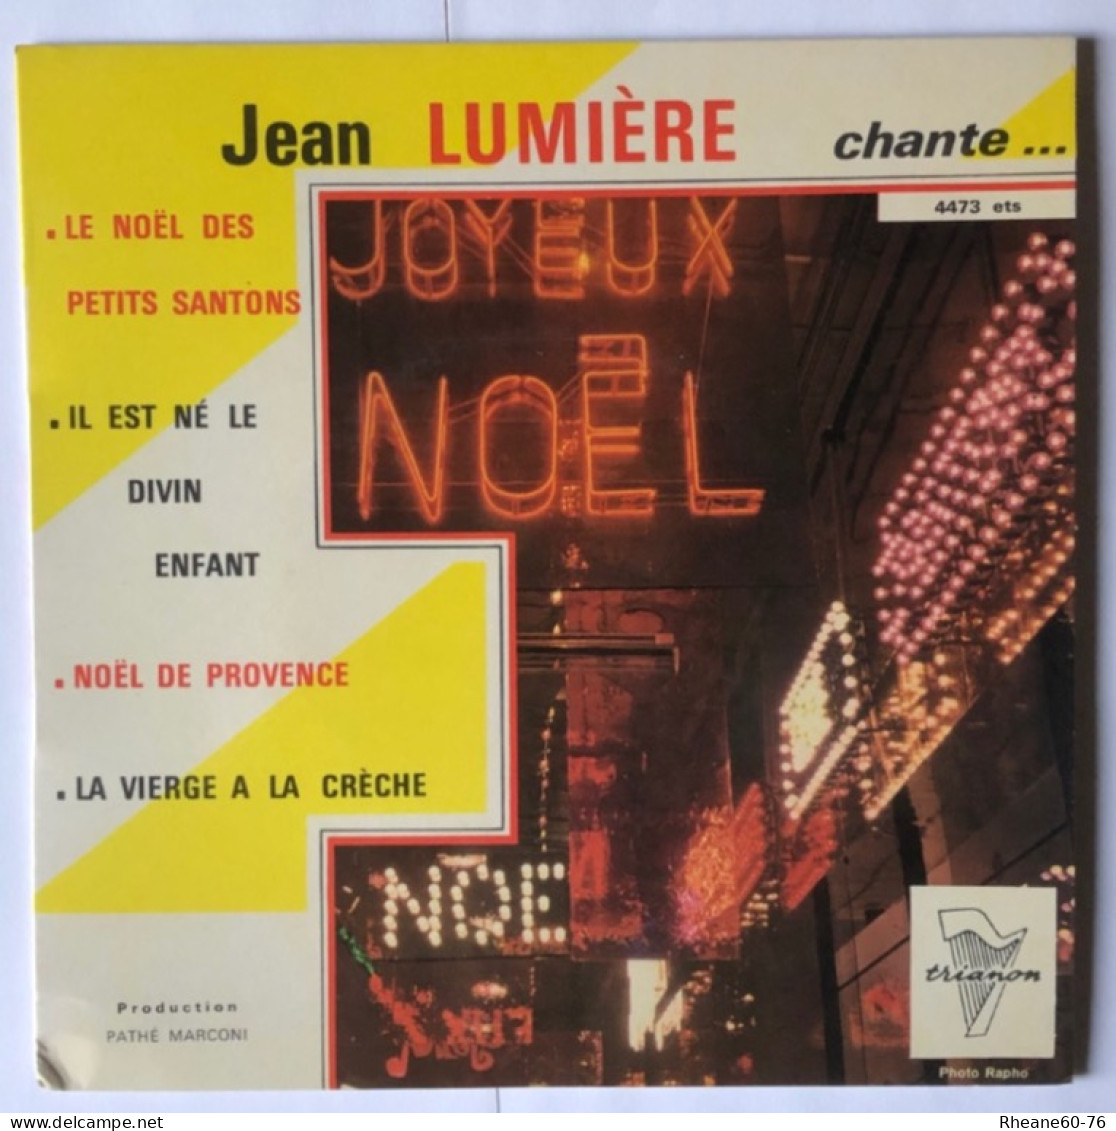 Trianon 4473 ETS - Jean Lumière Chante Noël … - Orchestre Direction Marcel Cariven - Pathé Marconi - Formatos Especiales